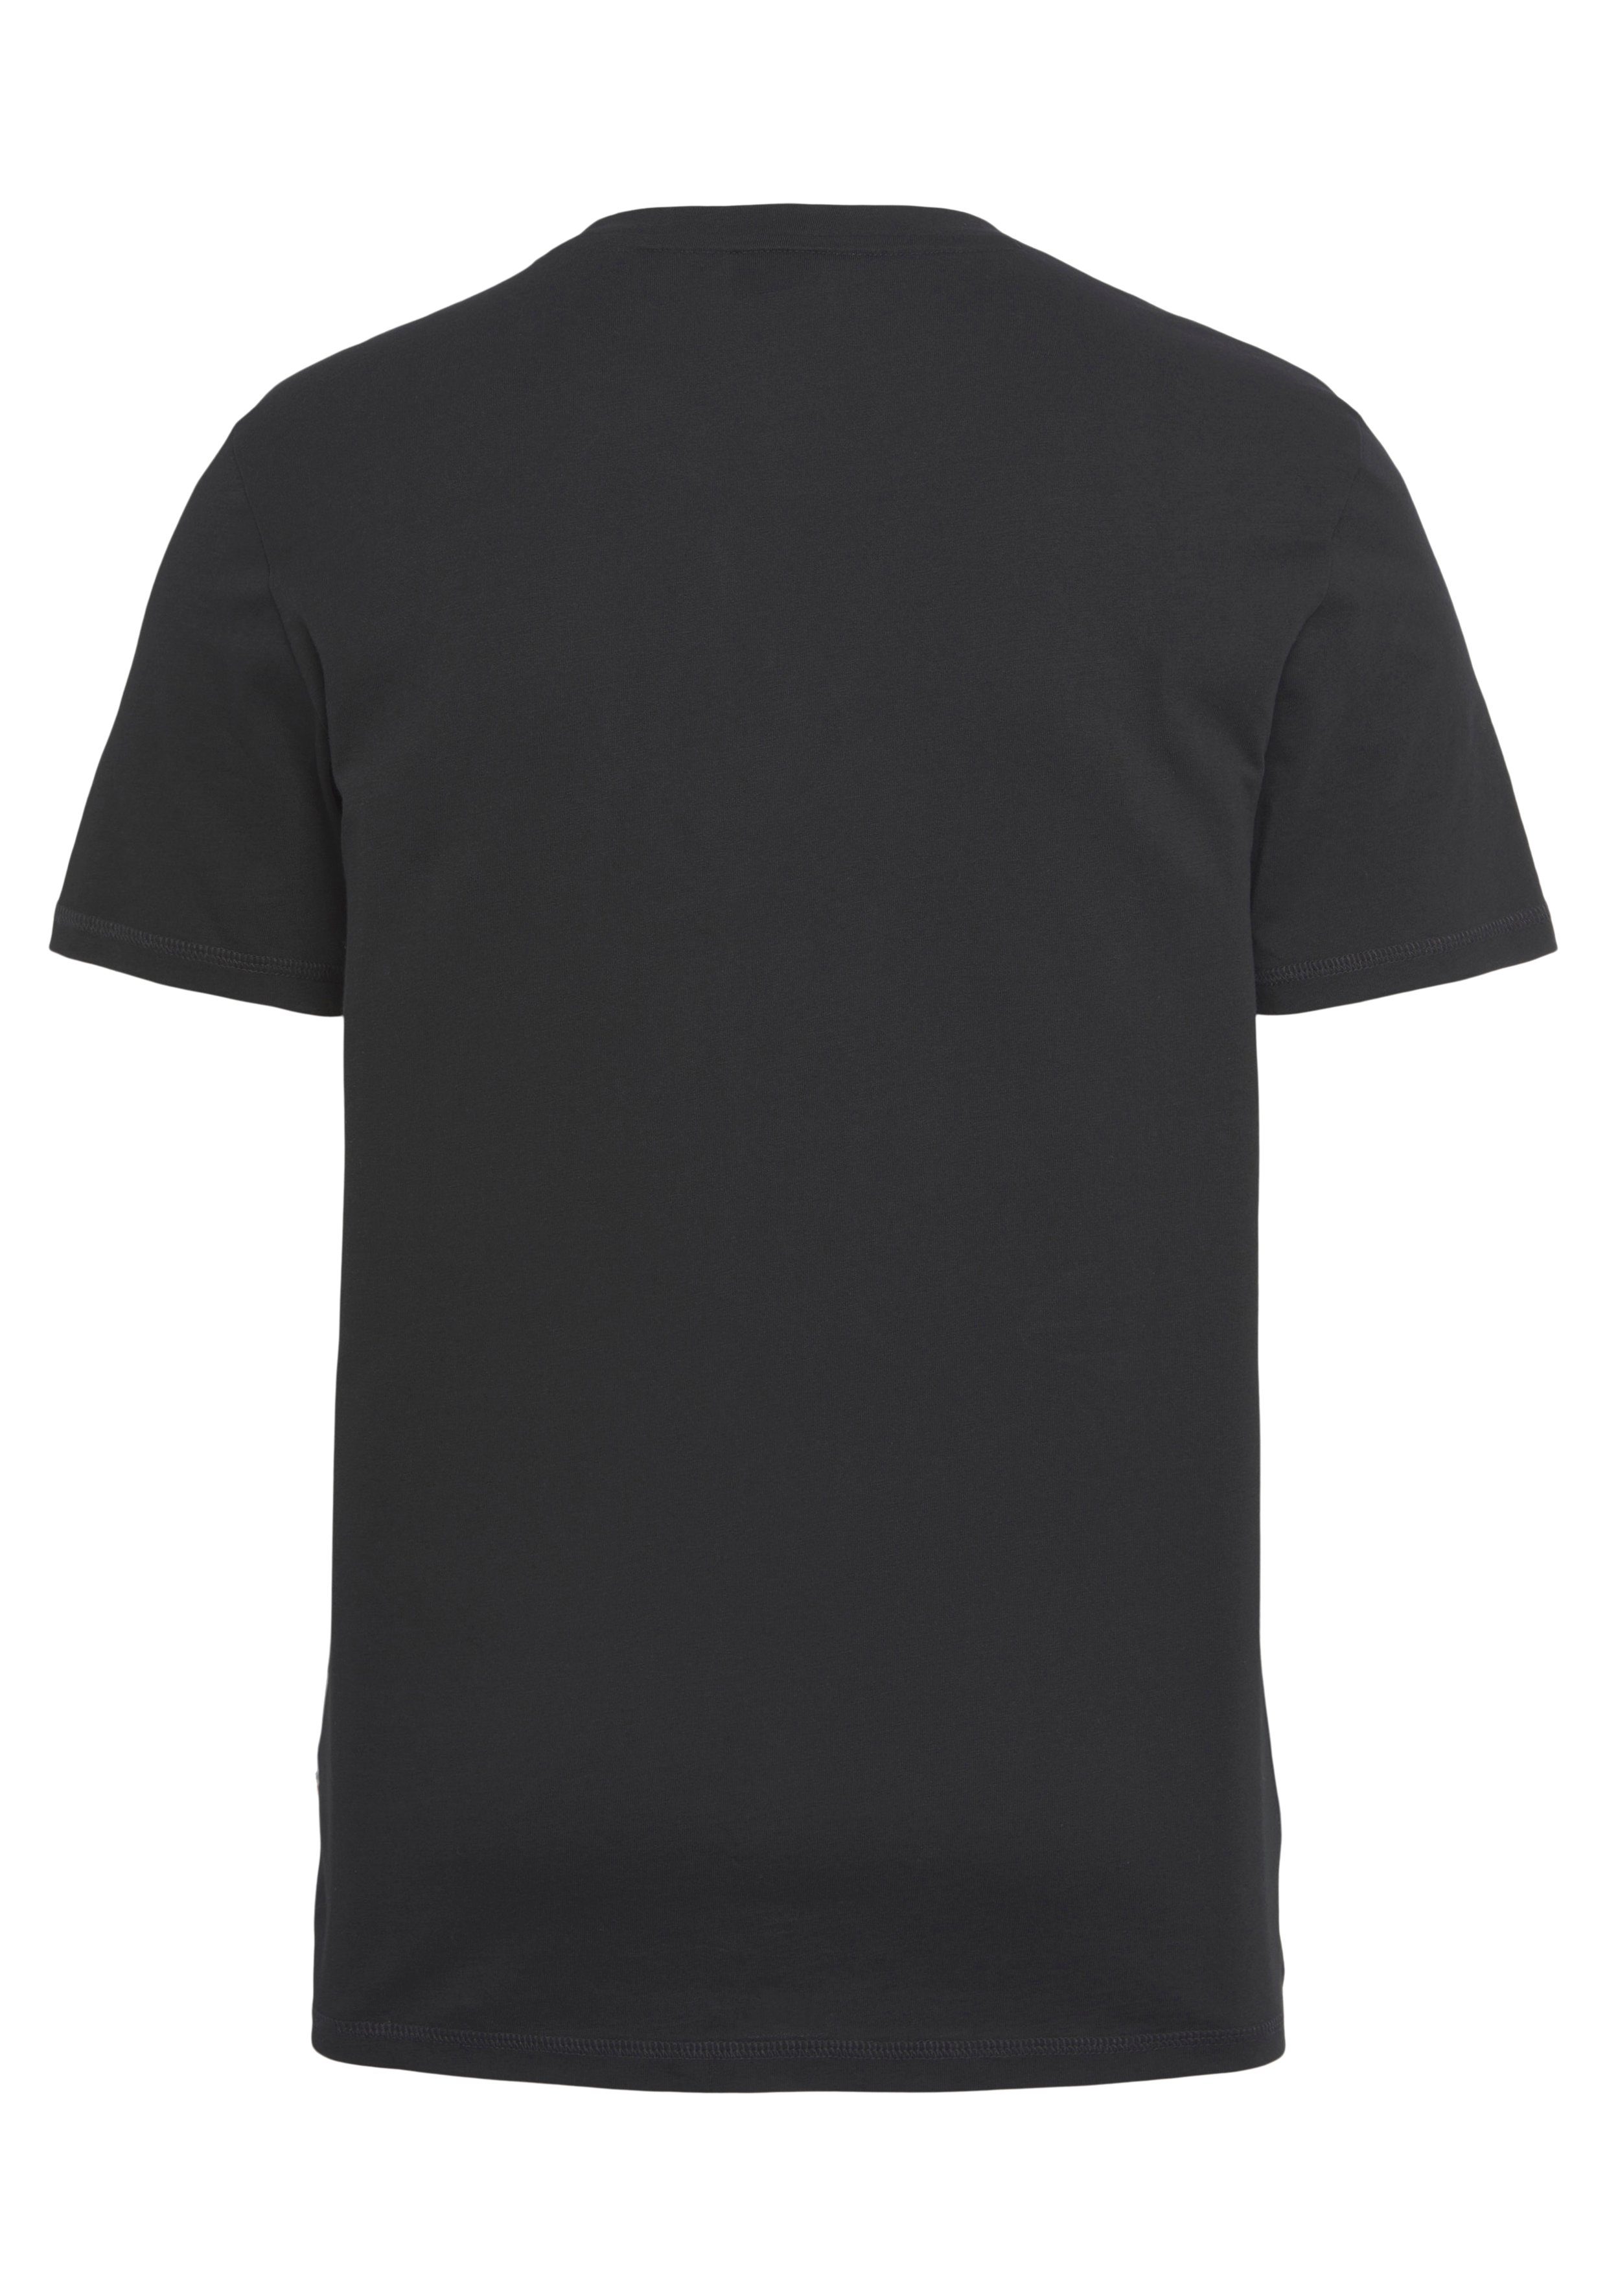 TeMessage Print Black002 BOSS ORANGE Brust auf mit großem der T-Shirt